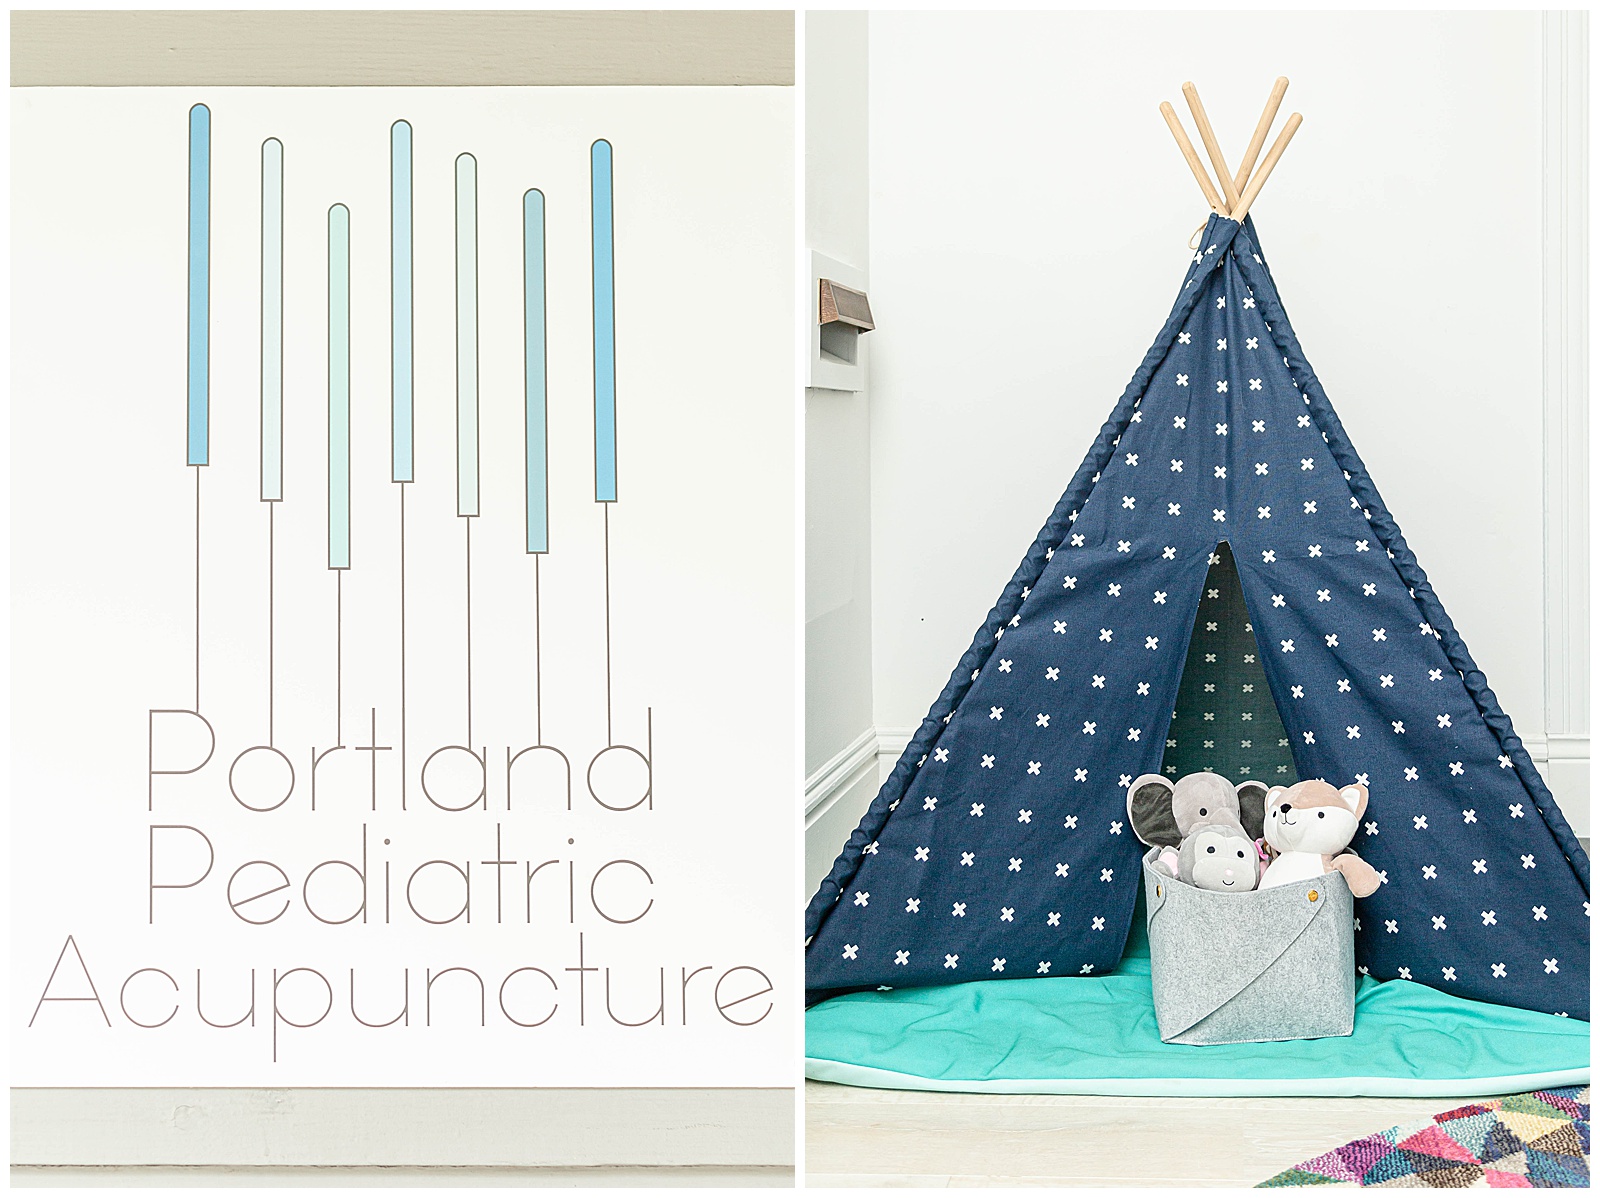 Portland Pediatric Acupuncture